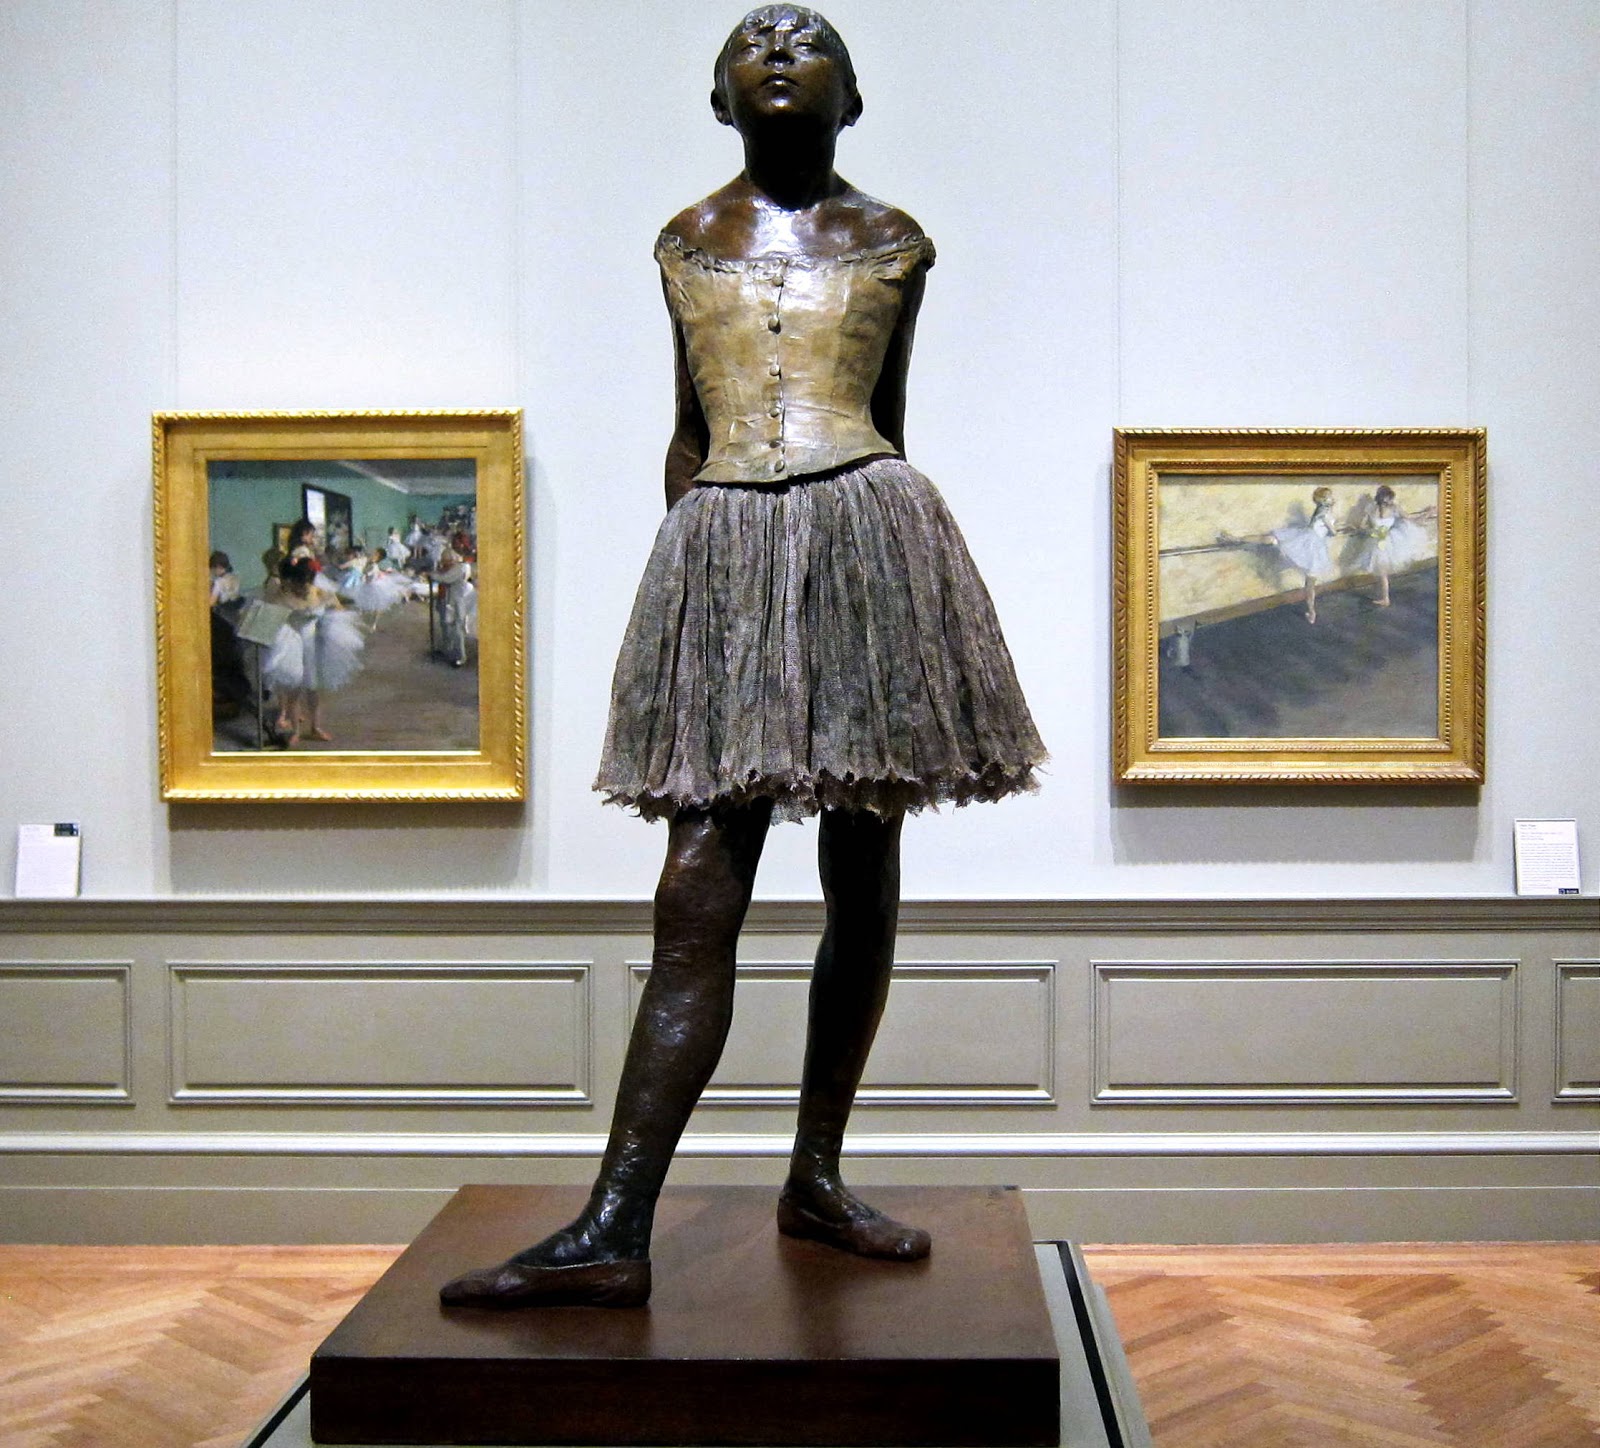 Edgar+Degas-1834-1917 (530).jpg